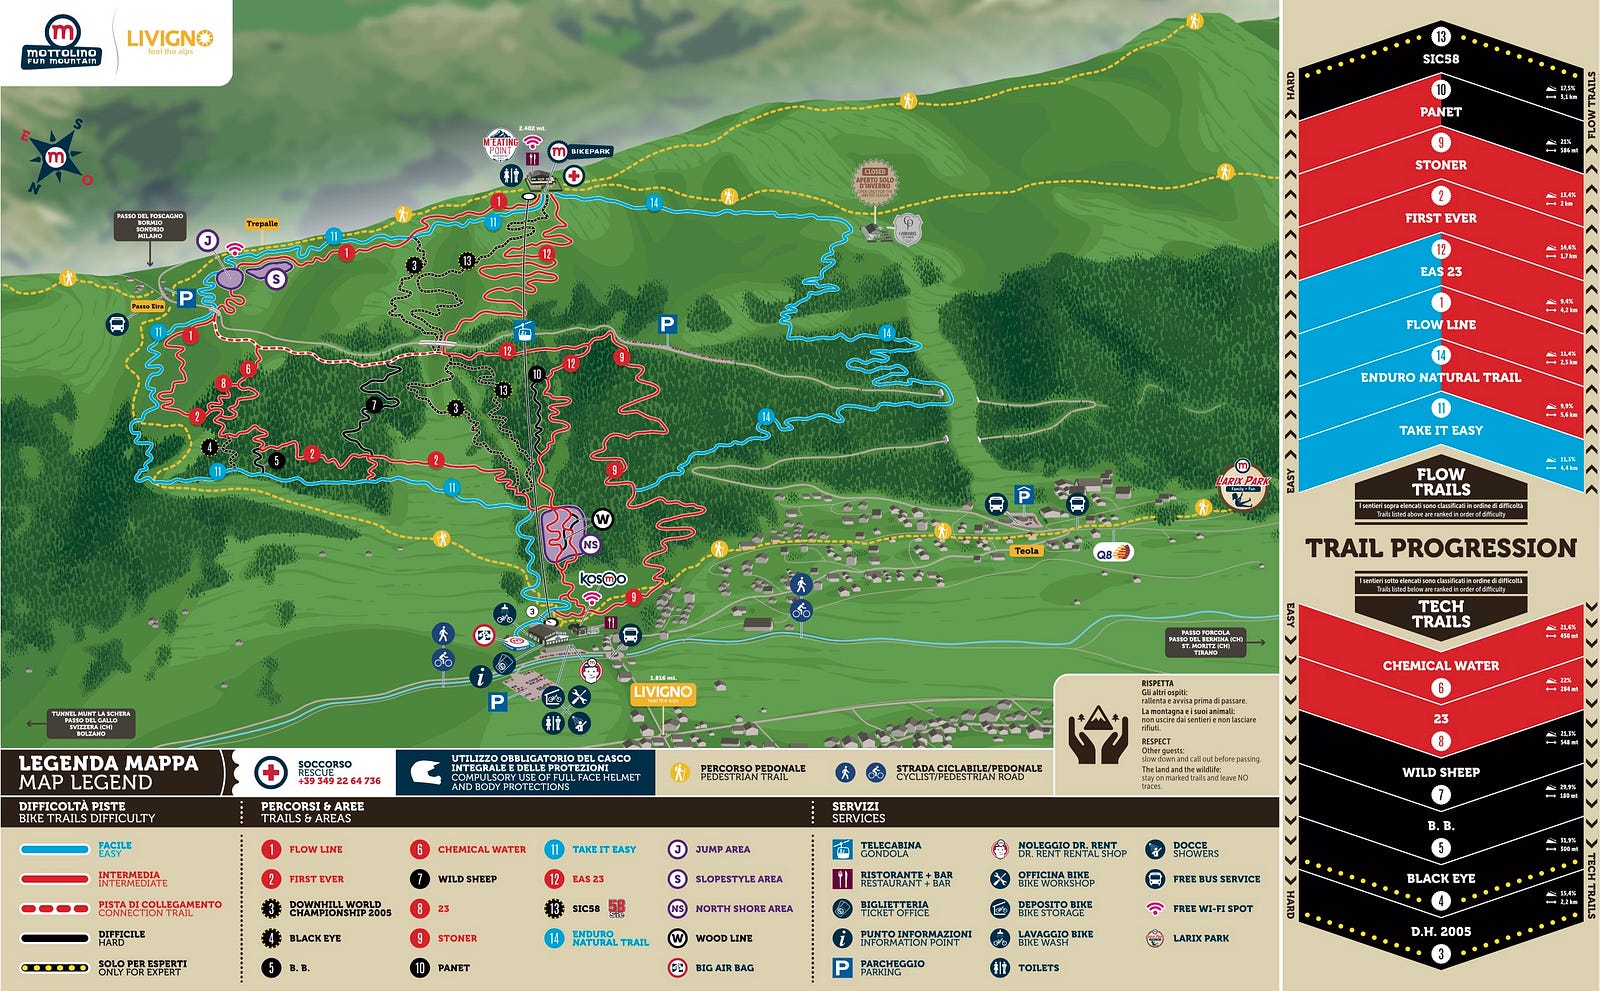 Mappa dei trails del Mottolino Bike Park a Livigno